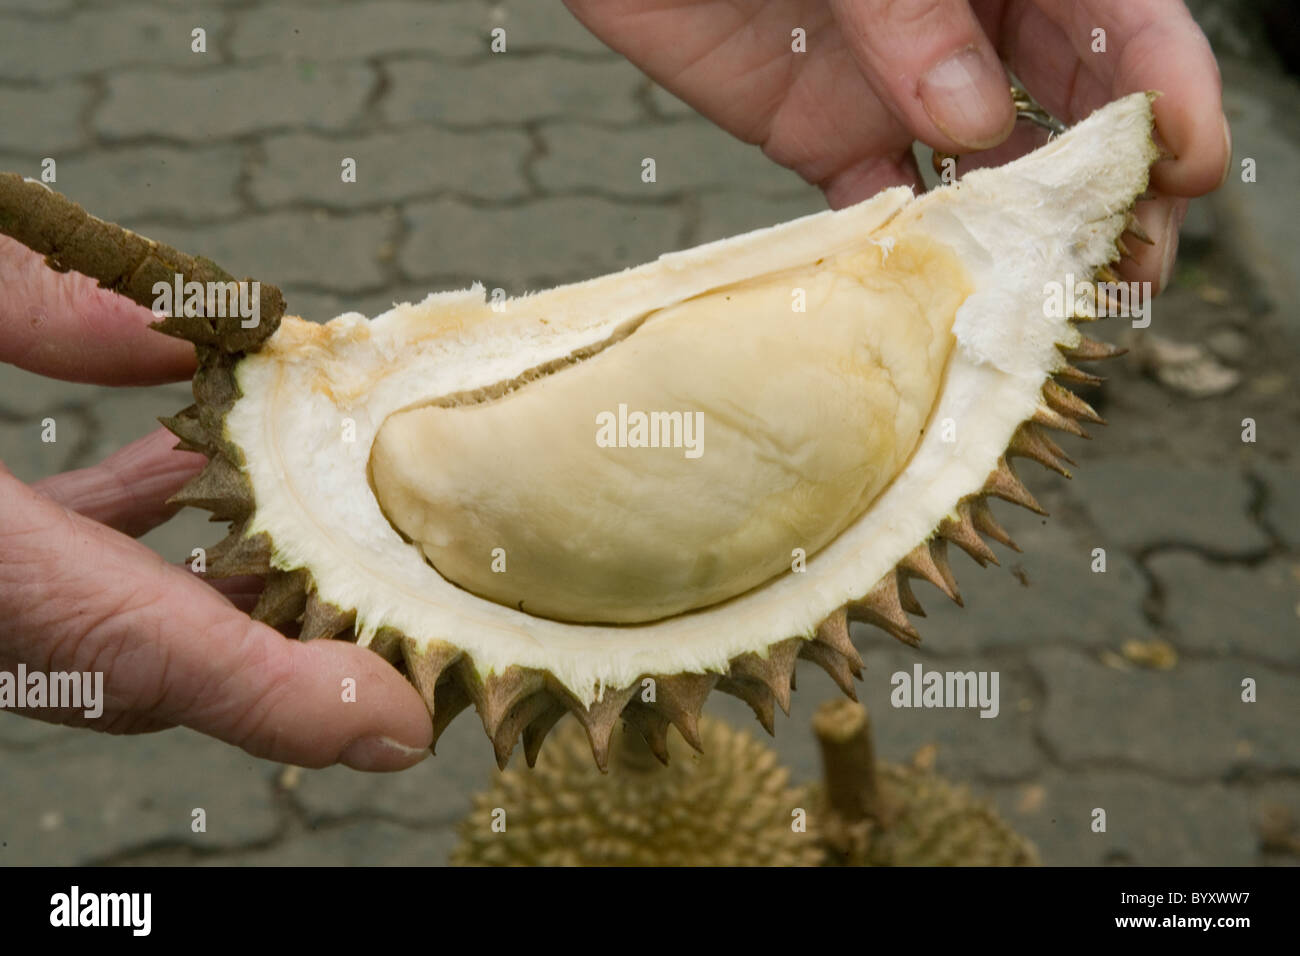 Durian fruit inside husk Stock Photo